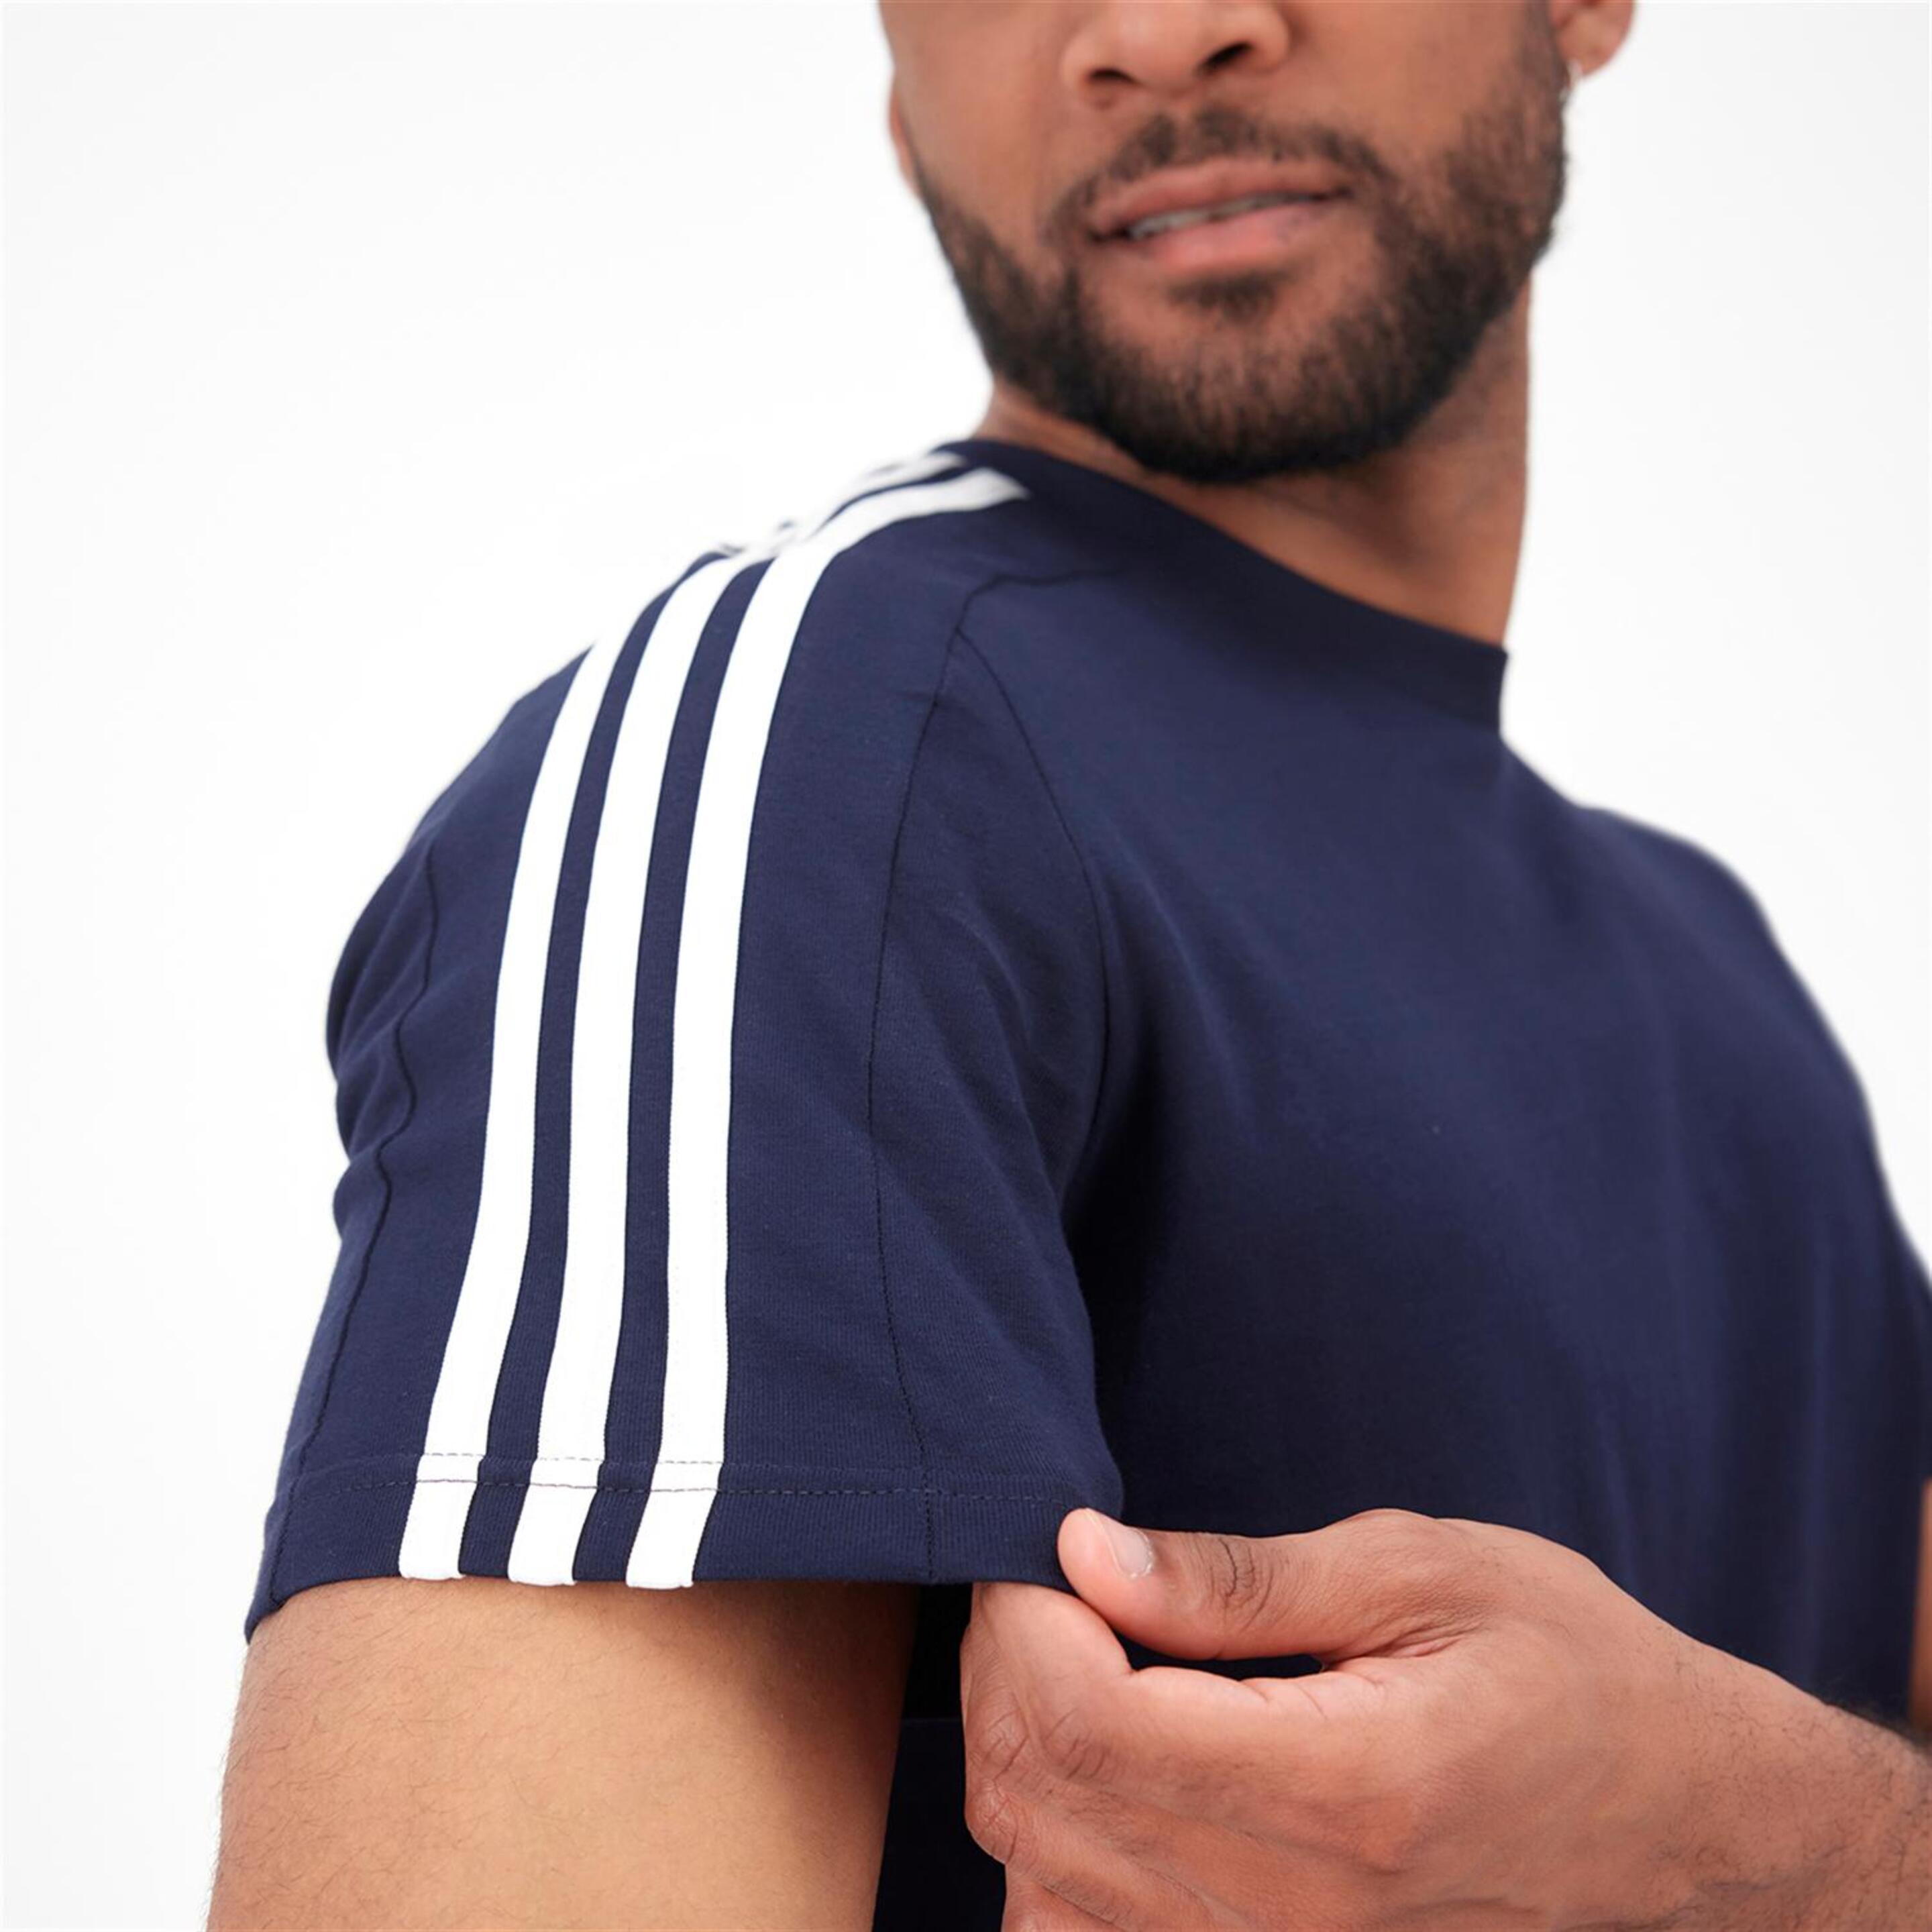 adidas 3 Stripes - - Camiseta Hombre  | Sprinter